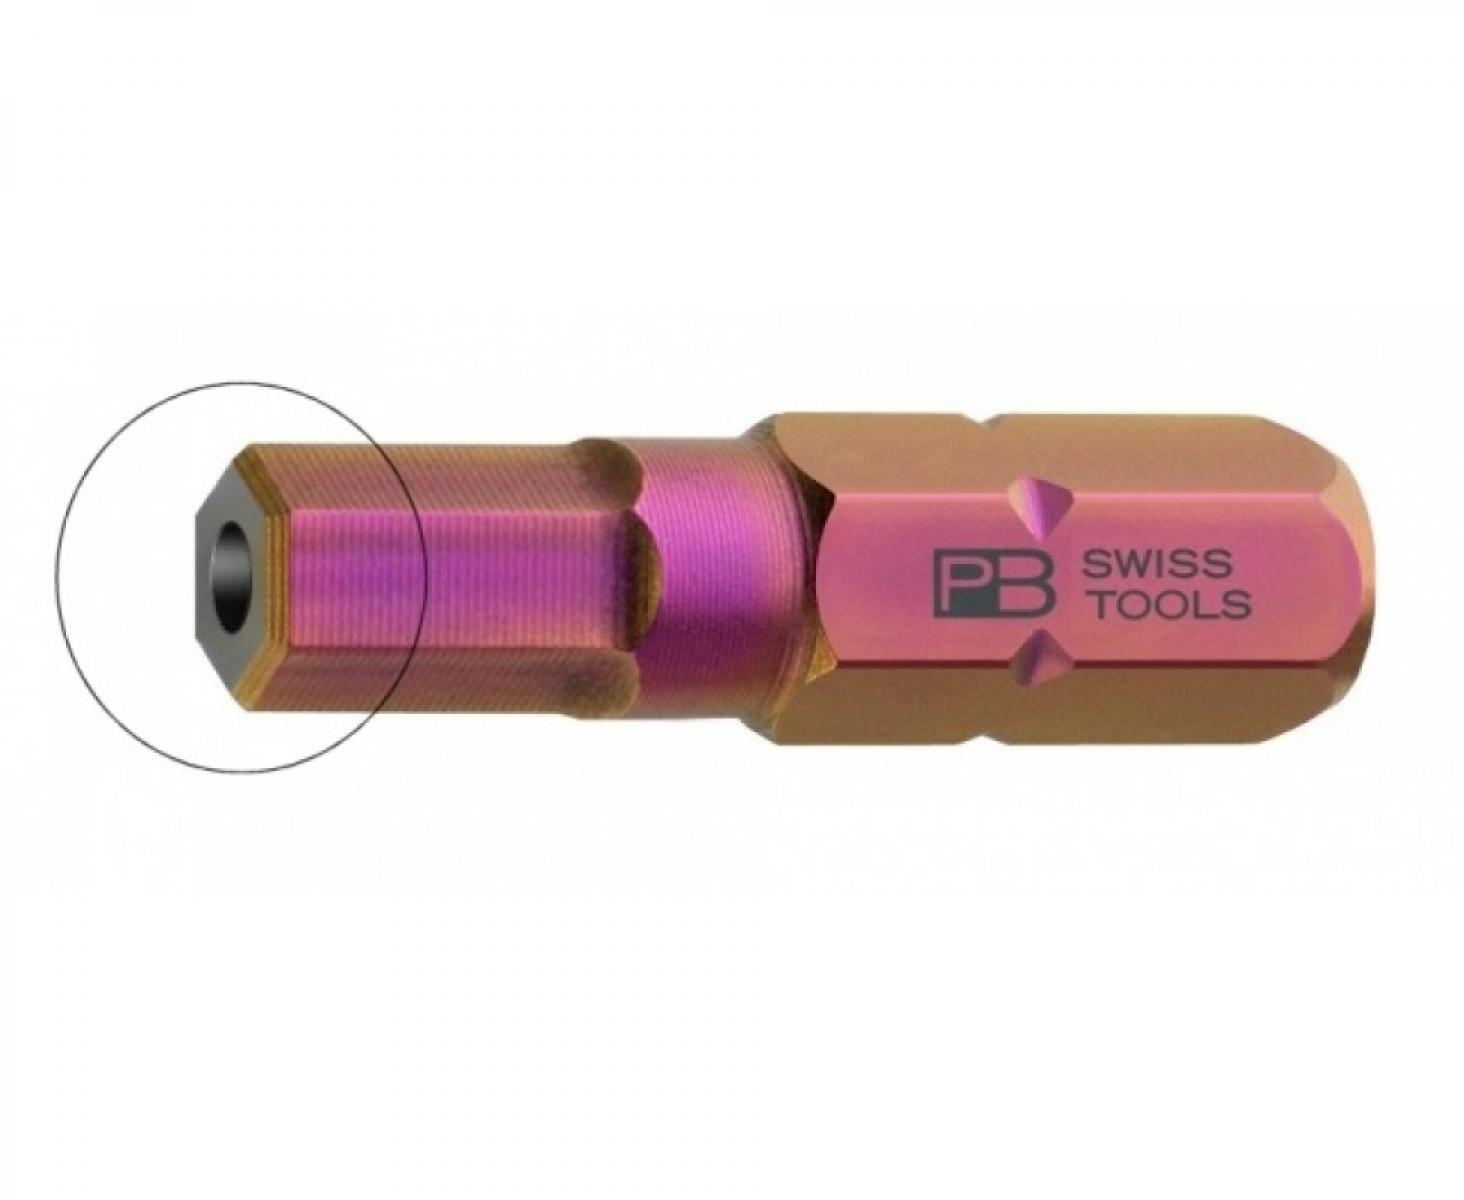 Бита HEX BO PrecisionBits C6,3 с внешним шестигранником 1/4 с отверстием PB Swiss Tools PB C6.210B/2,5 M2,5